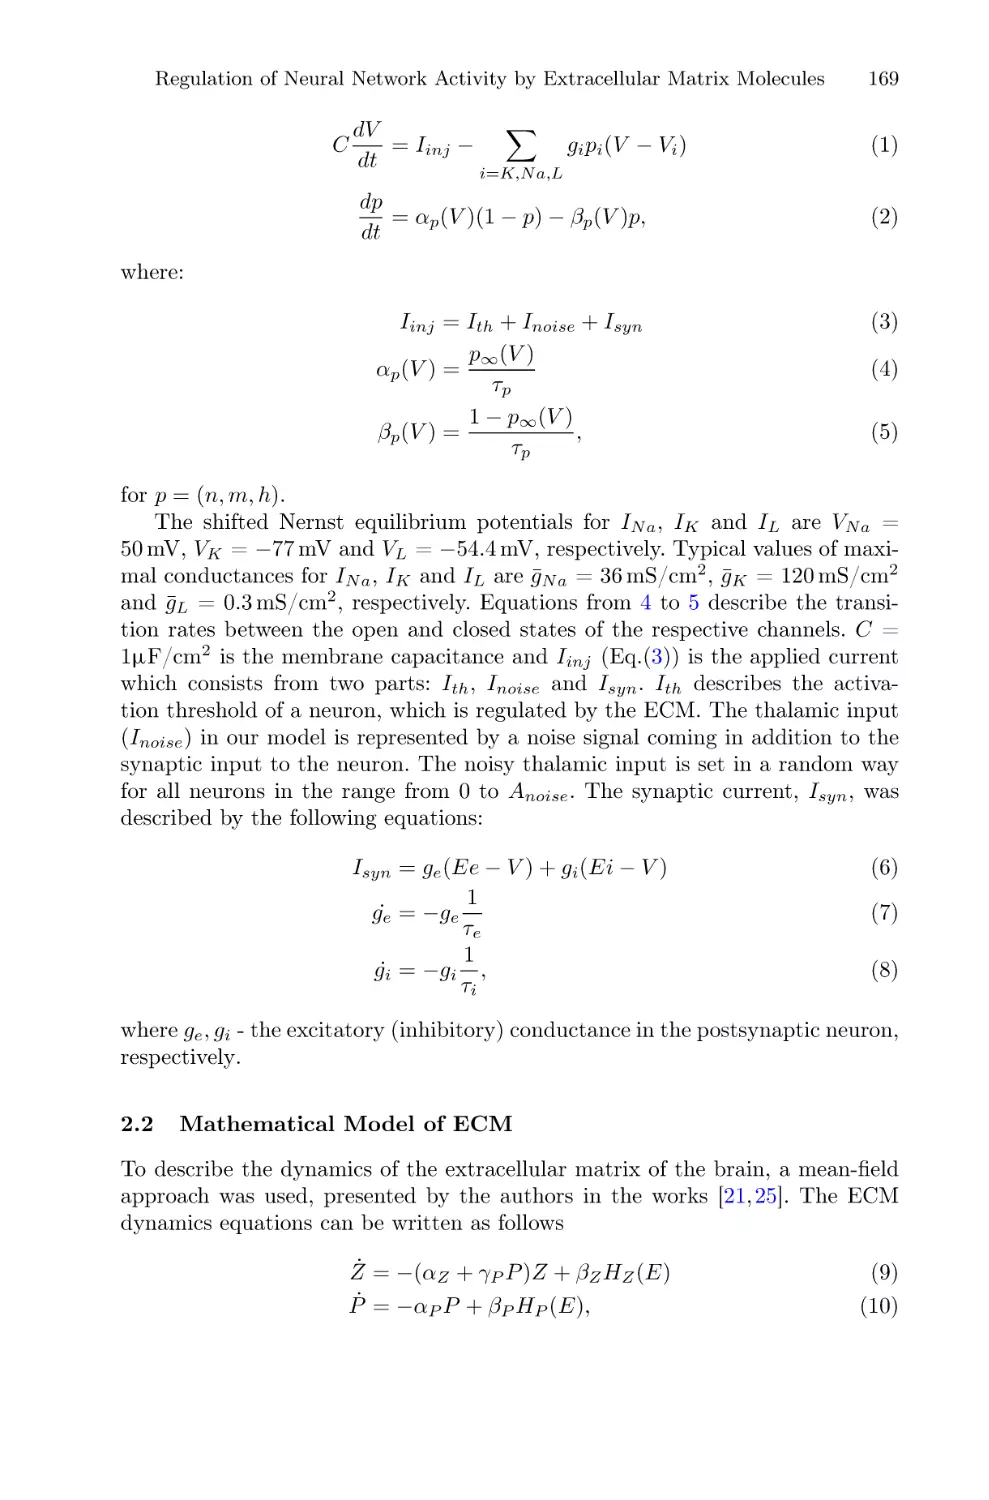 2.2 Mathematical Model of ECM